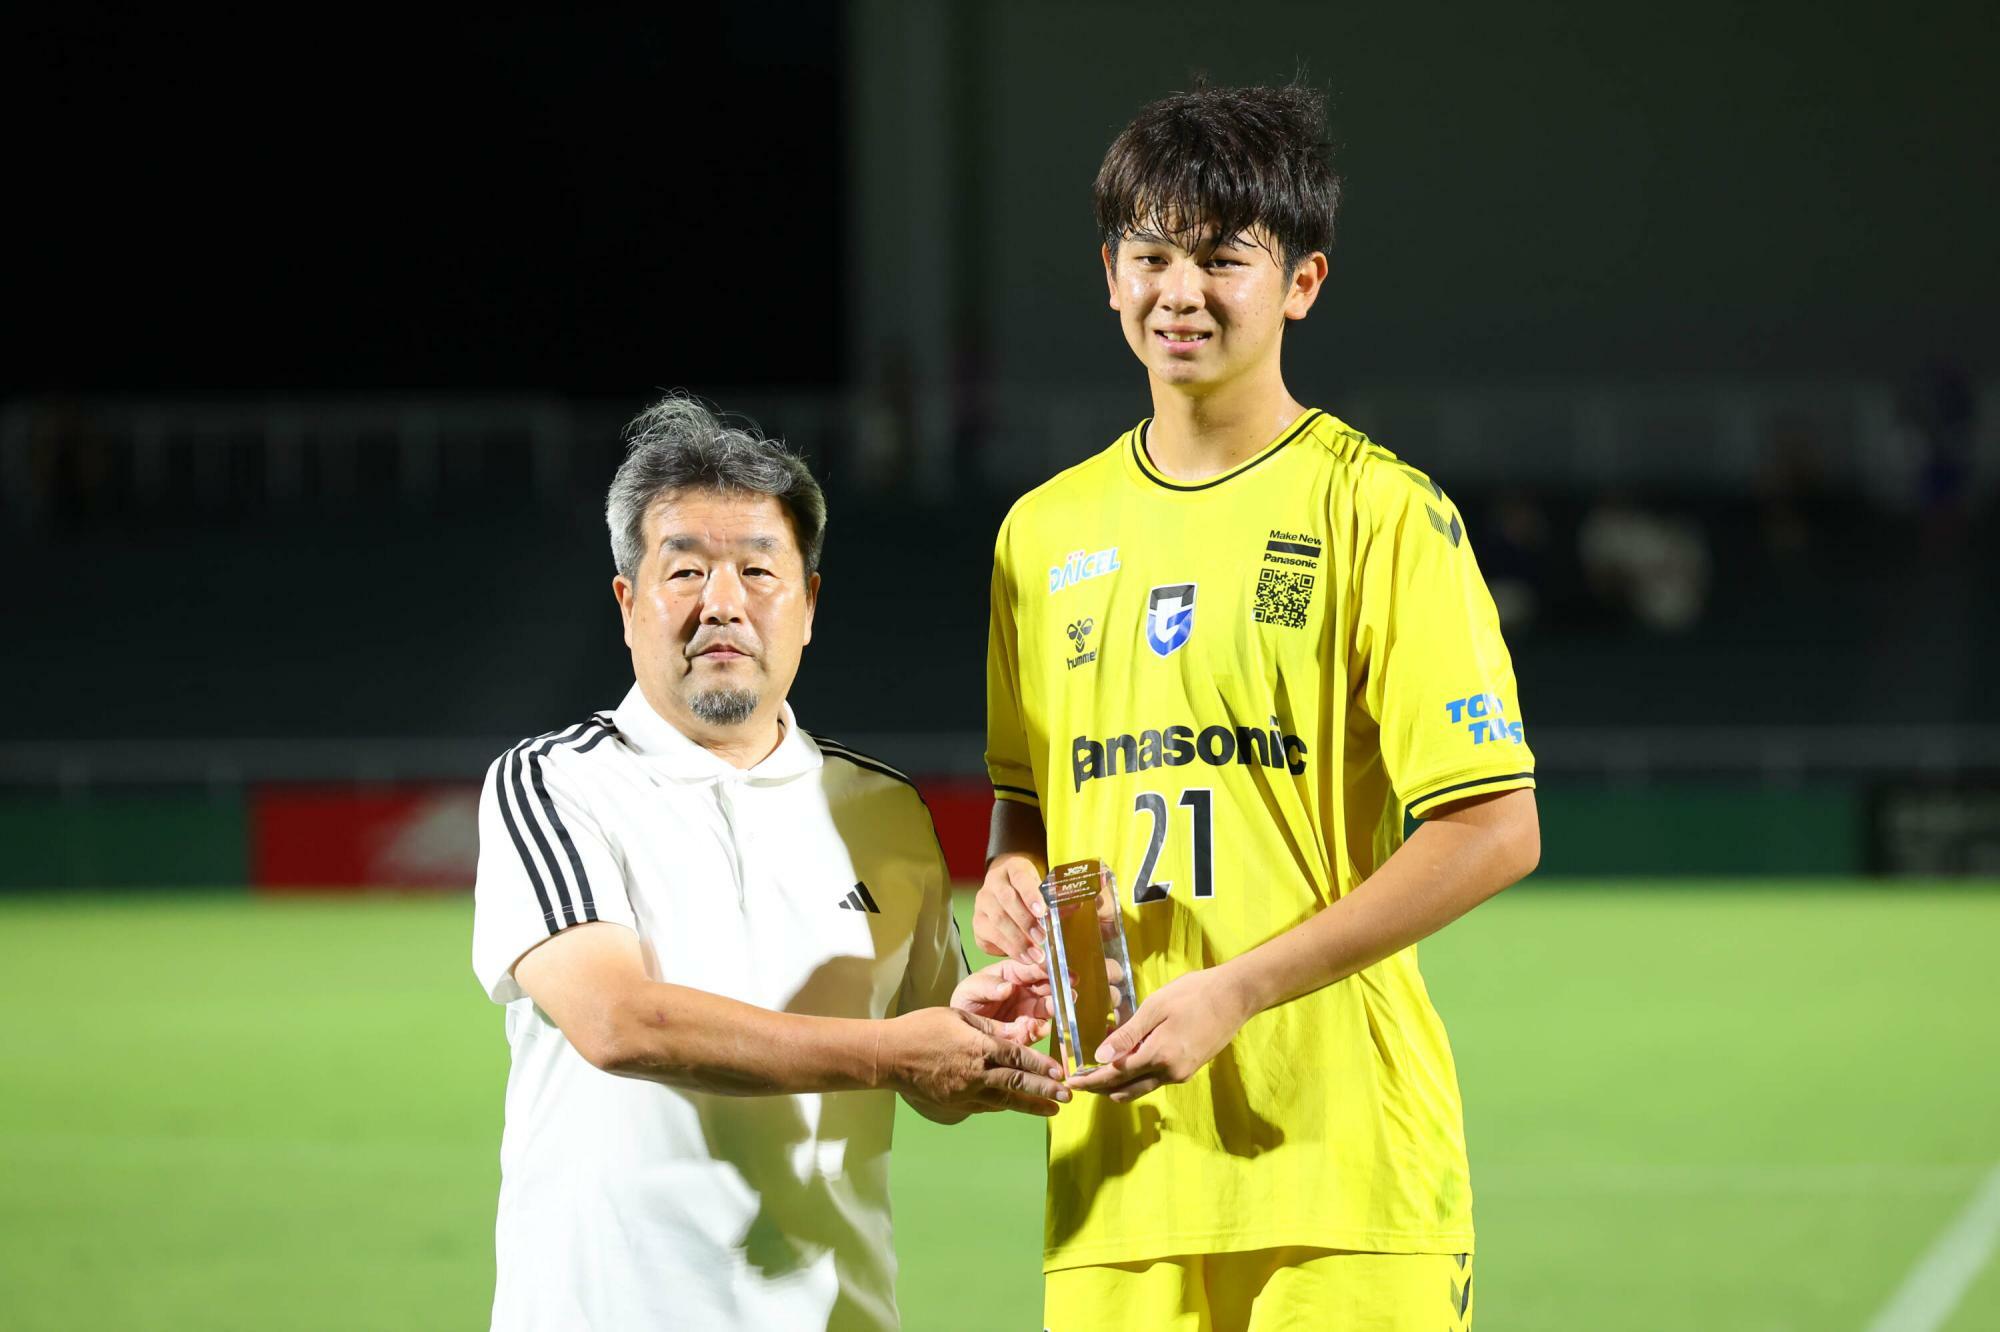 昨年、1年生ながら日本クラブユース選手権で優勝に貢献した荒木瑠偉は191センチの長身でスケール感も十分。既に、2種登録されている